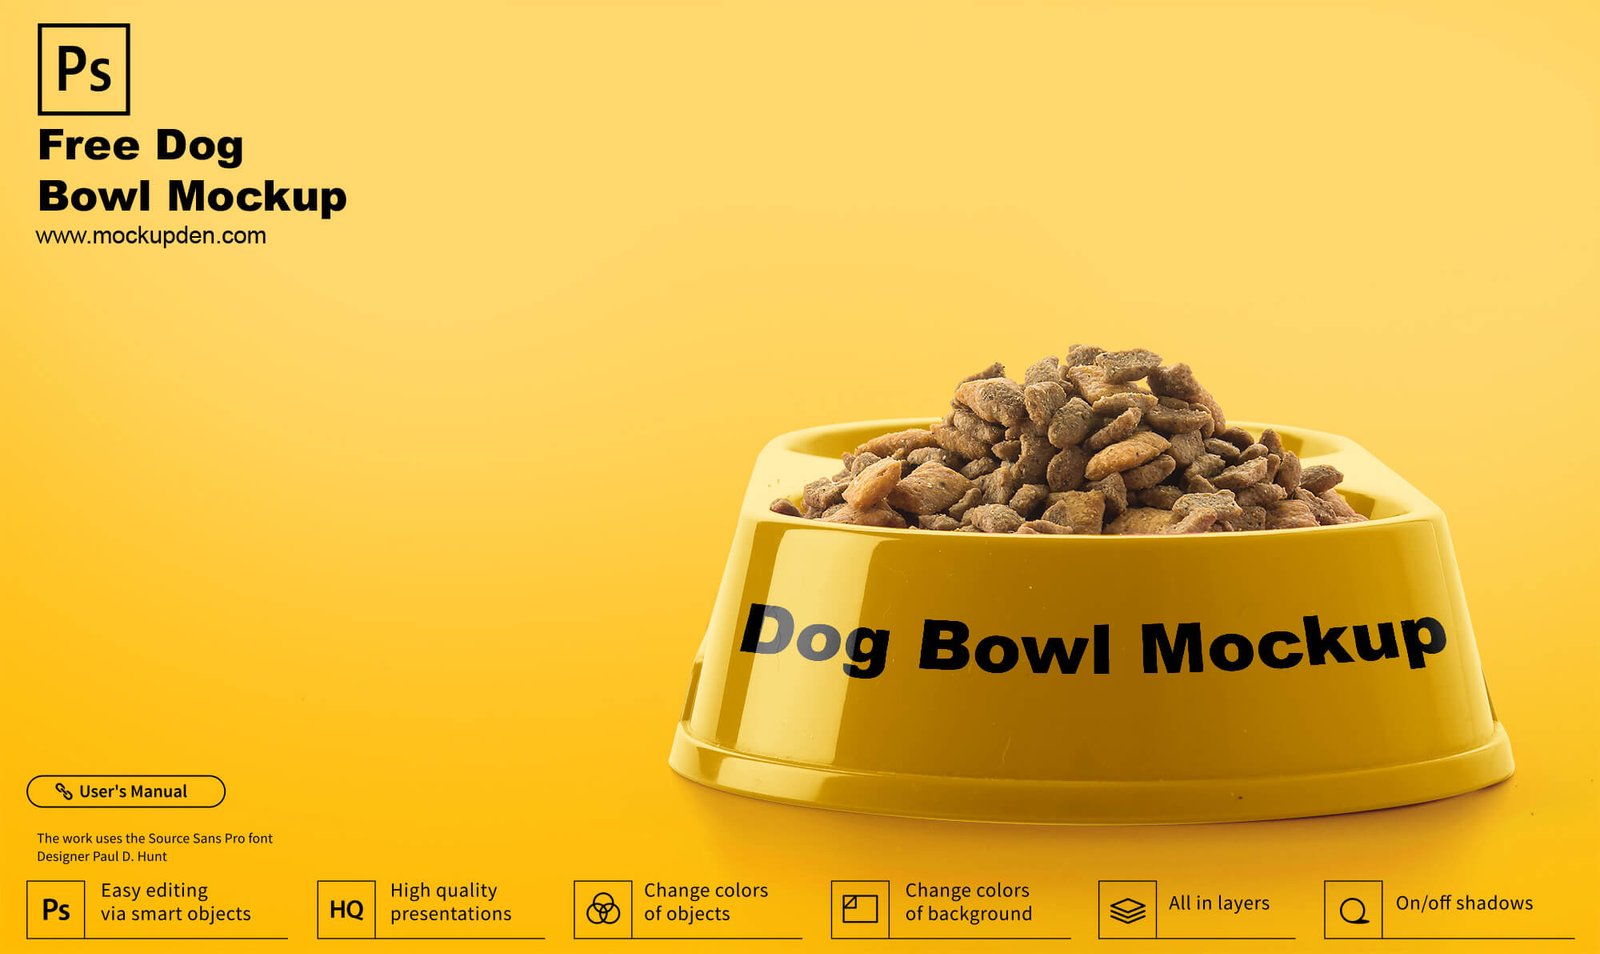 Download Free Dog Bowl Mockup PSD Template - Mockup Den